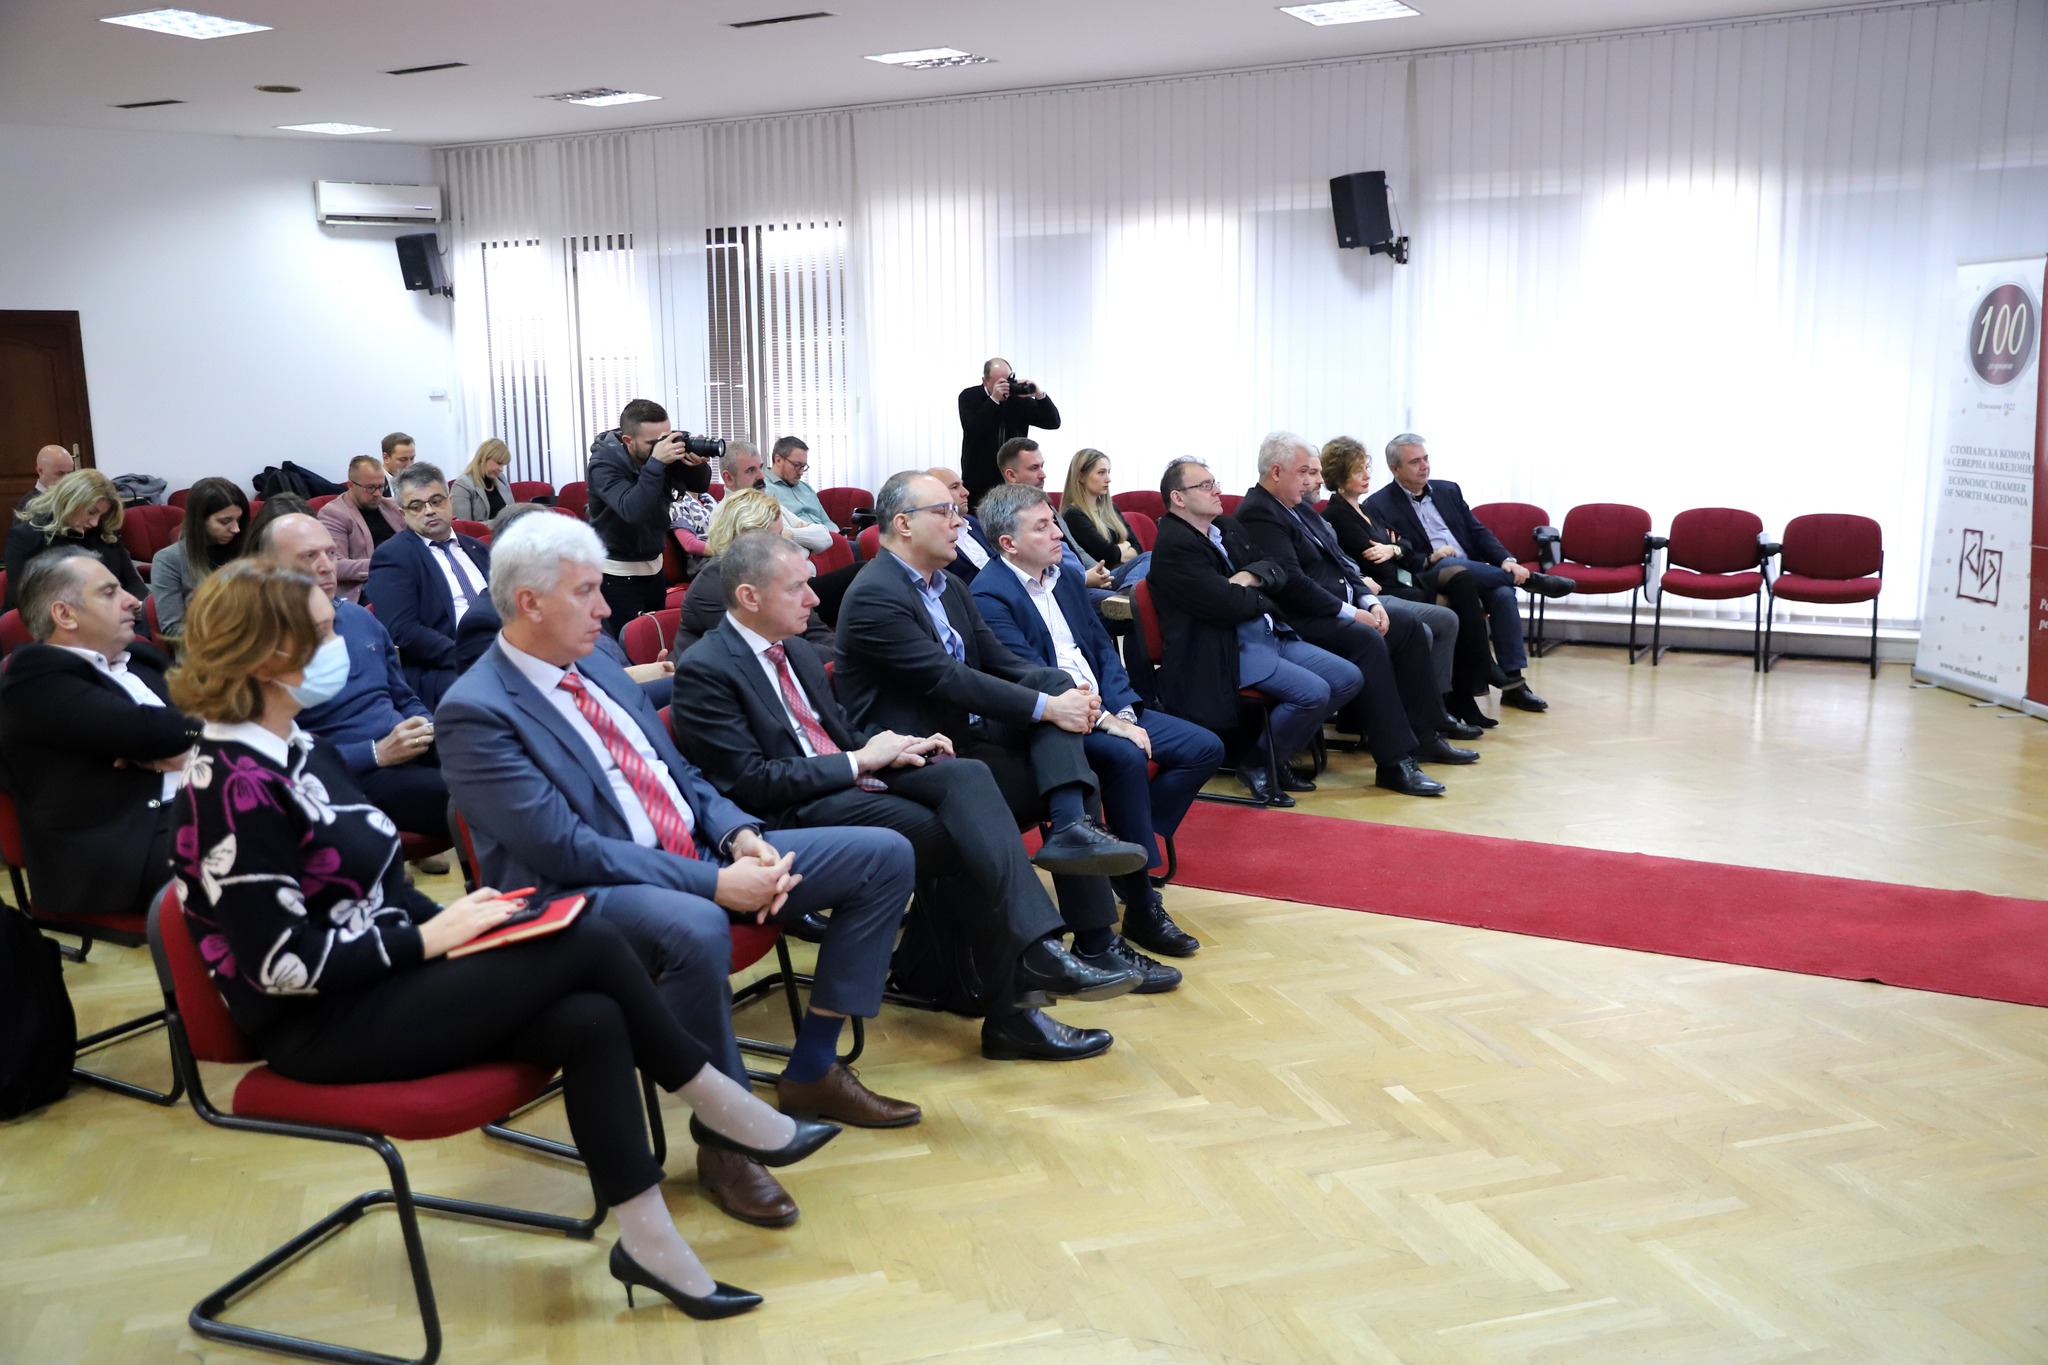 Ministri Bekteshi dhe drejtori Kovaçevski takim pune me kompanitë anëtare të OEMV-së: Në vazhdimësi marrim masa për furnizim të pandërprerë dhe të sigurt me energji për qytetarët dhe bizneset